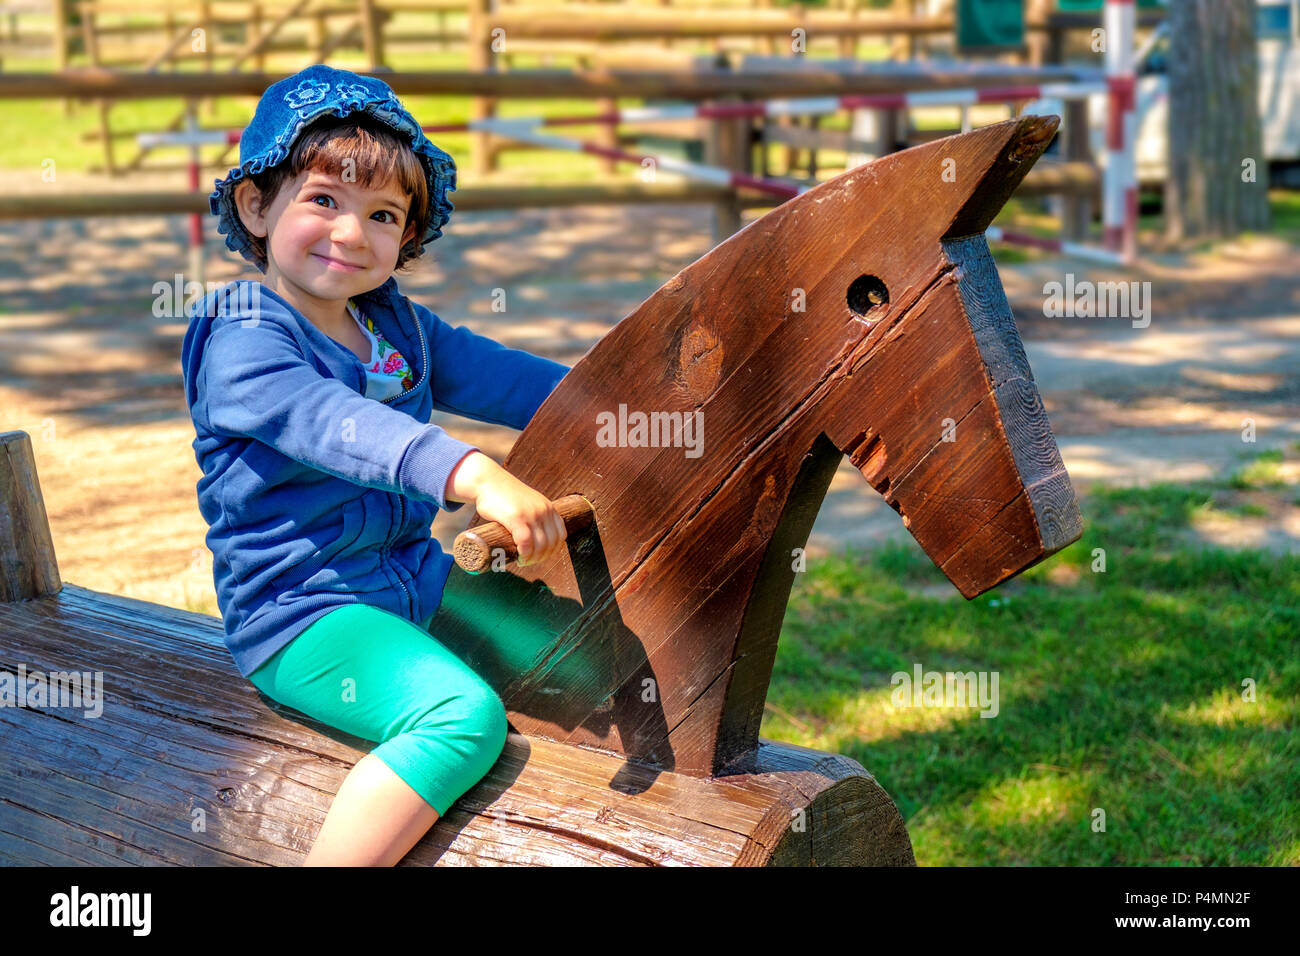 Baby Kind auf hölzernen Pferd in einer Ranch - Lernen zu reiten - Familie Reise nach Reitschule Stall. Stockfoto